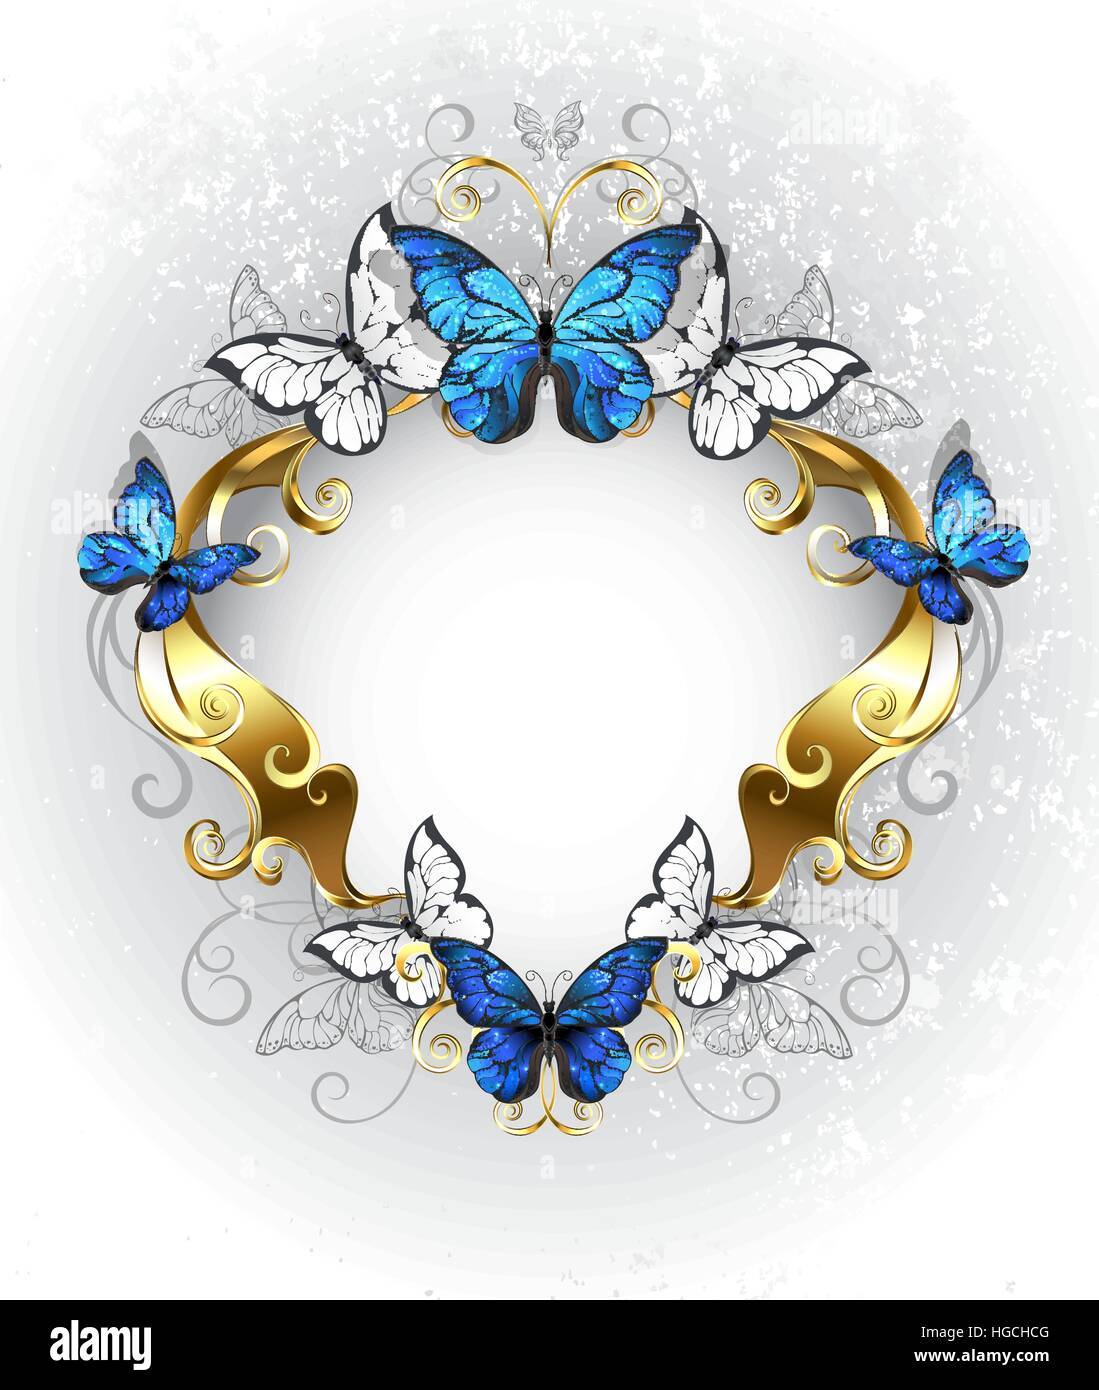 Bijoux, d'or, avec bandeau à motifs papillons morpho bleu et blanc sur un fond de texture légère. Morpho. Conception avec papillons bleu morpho. Illustration de Vecteur